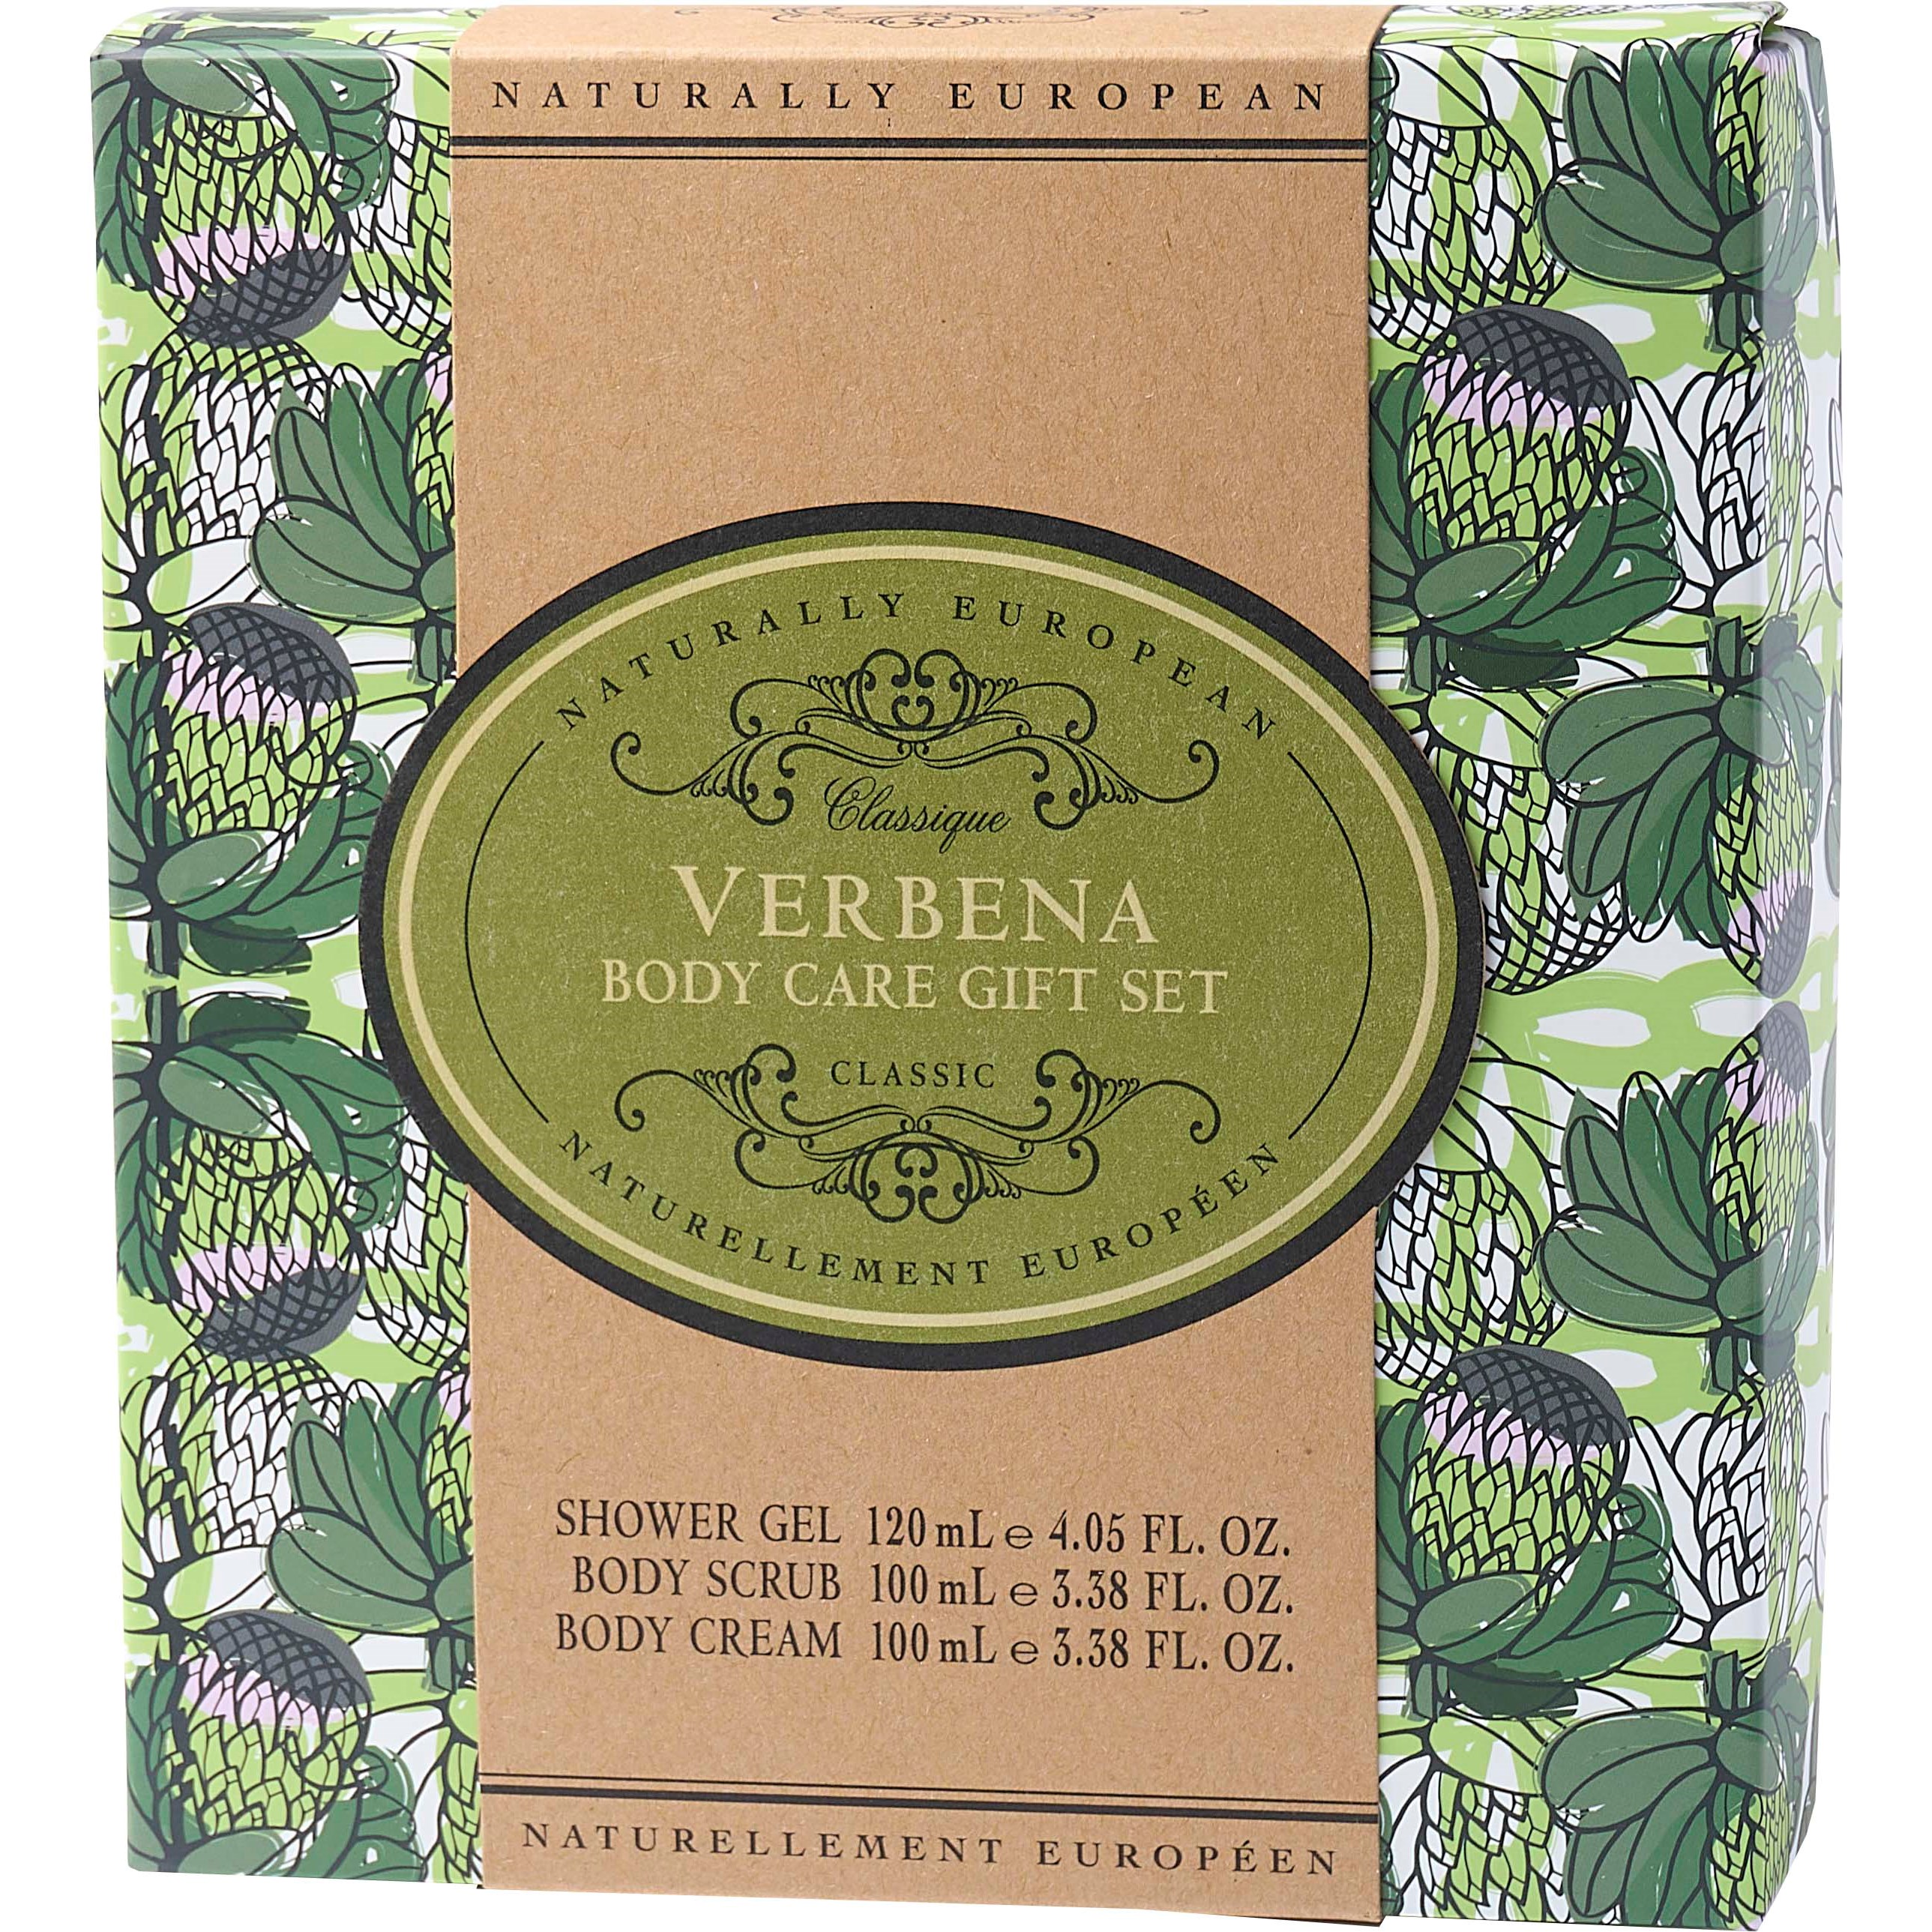 Naturally European Verbena Body Care Gift Set